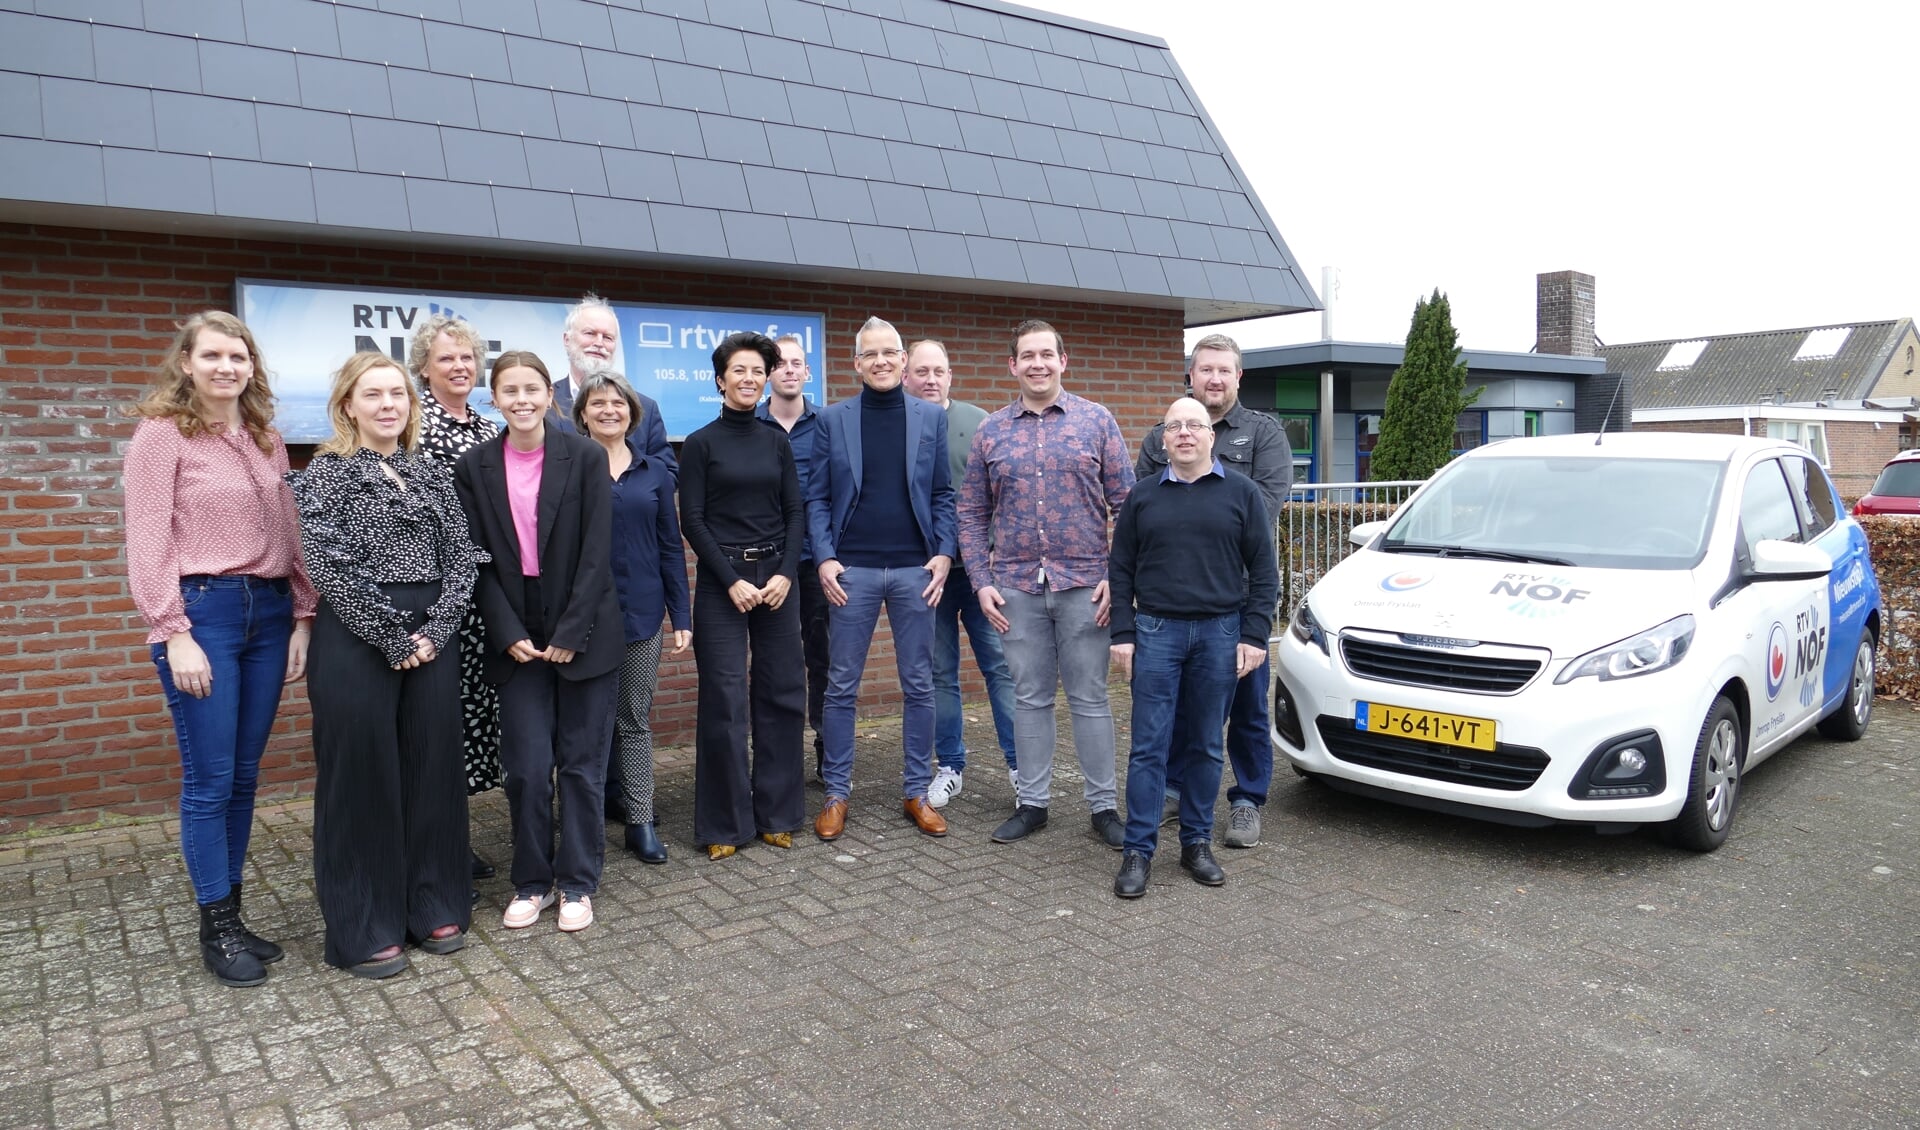 Staatssecretaris Gunay Uslu (midden) met medewerkers van RTV NOF en Omrop Fryslân.